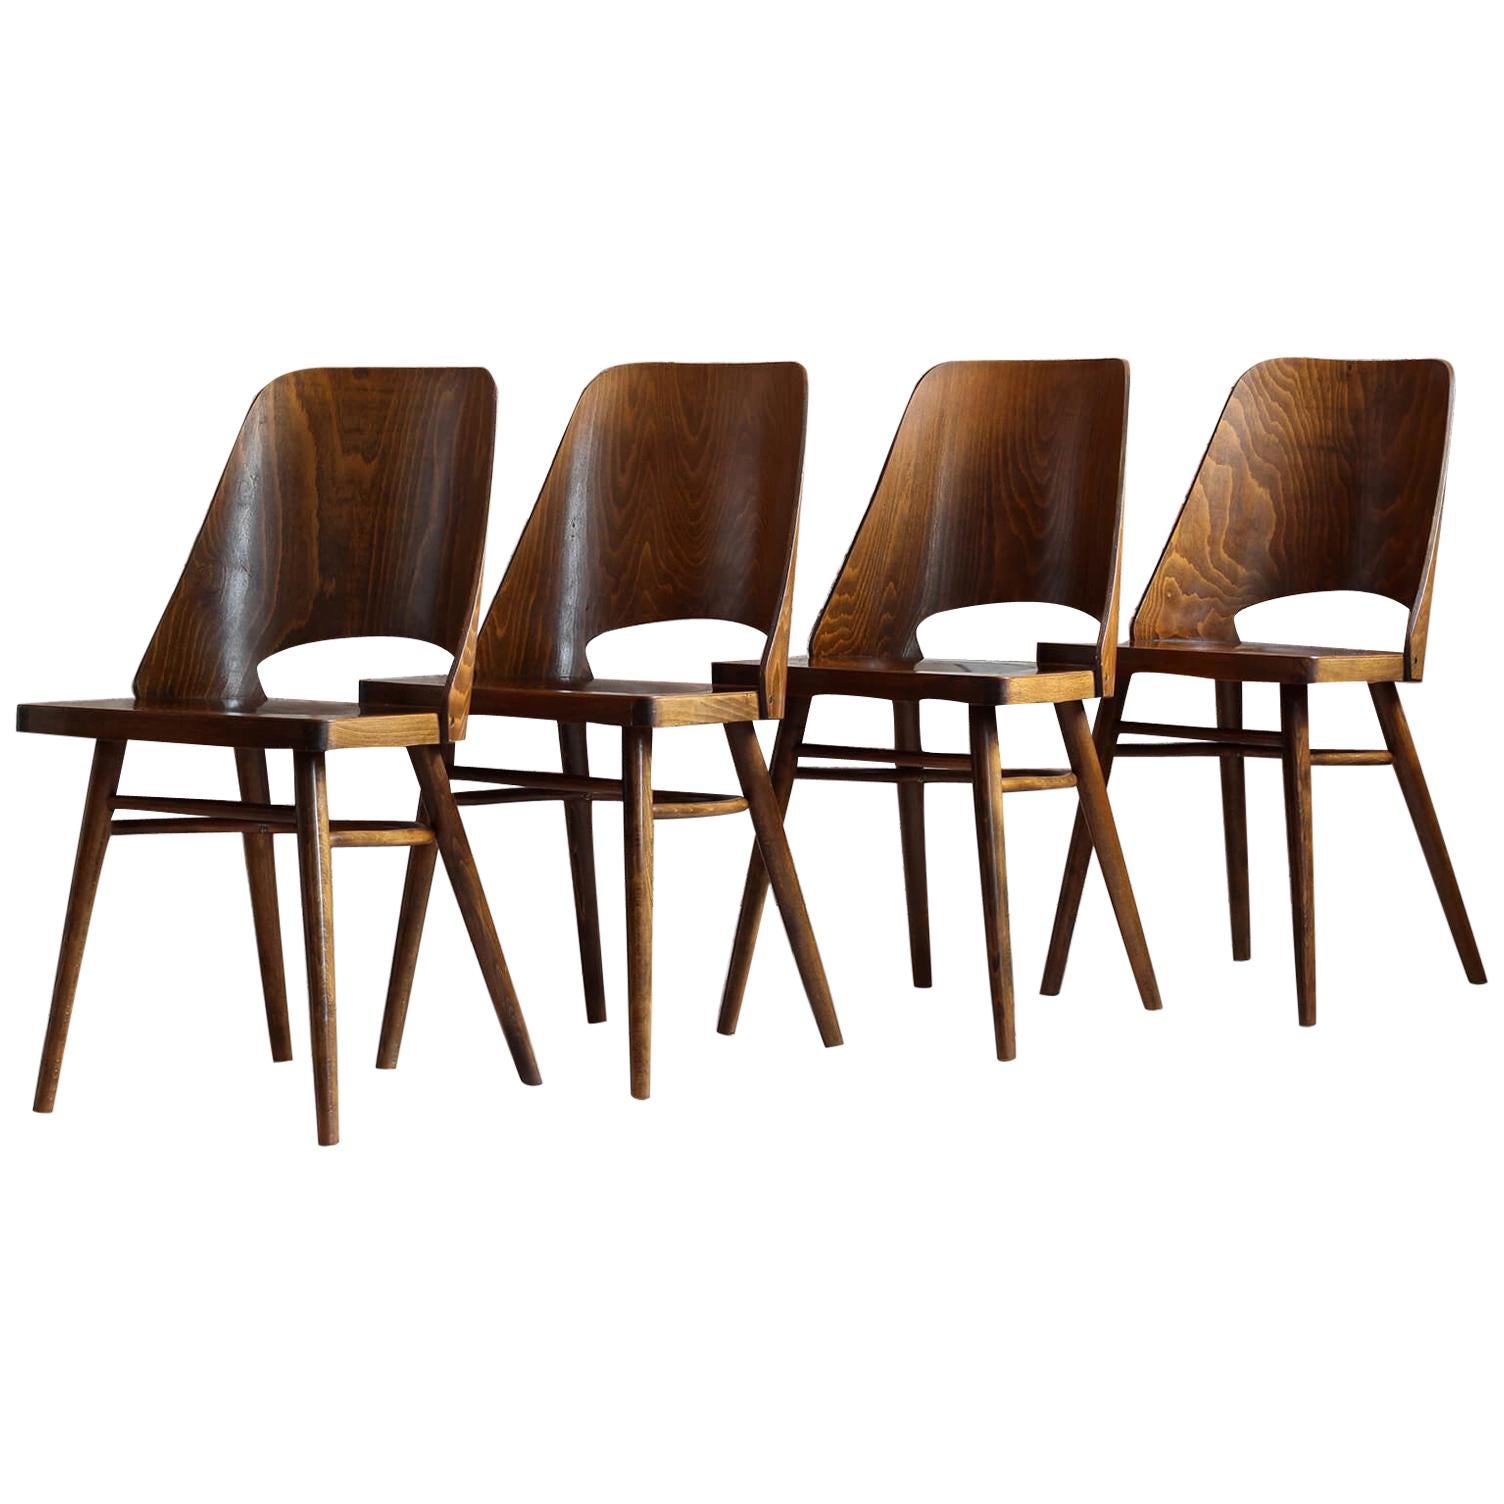 Set of 4 Dining Chairs by Radomir Hofman for TON, Model 514, Beech Veneer